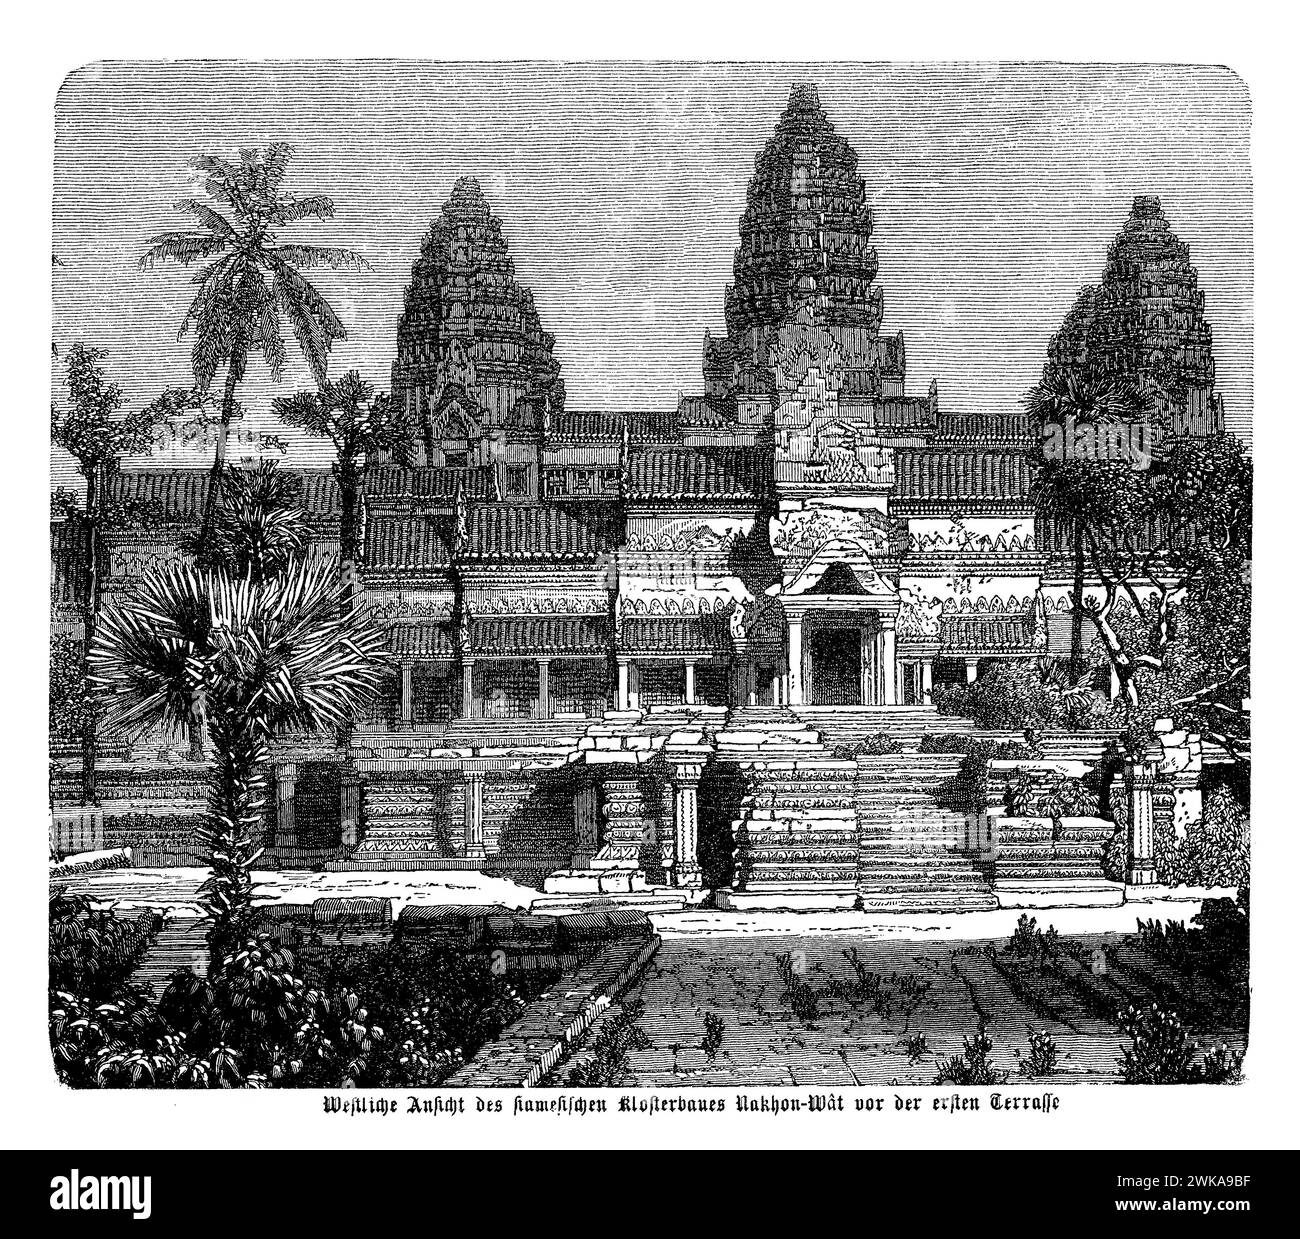 Der westliche Blick auf Angkor Wat vor der ersten Terrasse bietet einen atemberaubenden Blick auf das größte religiöse Denkmal der Welt, mit seinen berühmten Lotostürmen und dem riesigen Graben, der den Tempelkomplex umgibt. Angkor Wat ist ein Meisterwerk der Khmer-Architektur, bekannt für seine komplizierten Basreliefs, die Sandsteinkonstruktion und die Harmonie seines Designs, das die hinduistische Kosmologie symbolisiert. Es befindet sich in Angkor, der alten Hauptstadt des Khmer-Reiches Stockfoto